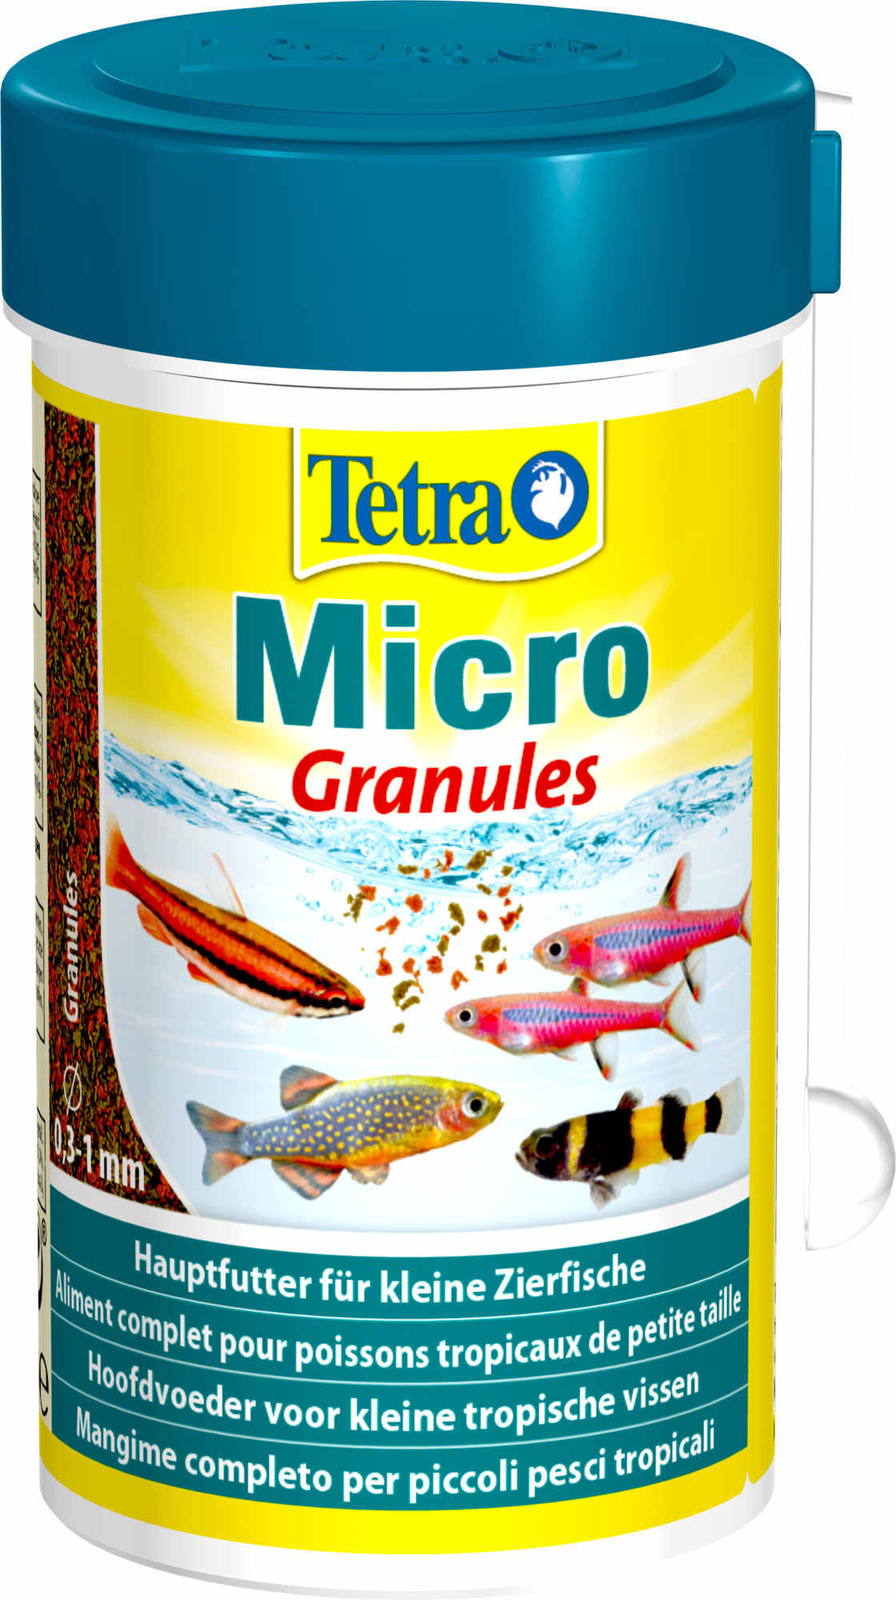 Tetra (корма) Tetra (корма) корм для всех видов мелких рыб, микрогранулы (45 г) tetra корма tetra корма корм для бойцовых рыб и других видов лабиринтовых имитация мотыля 5 г